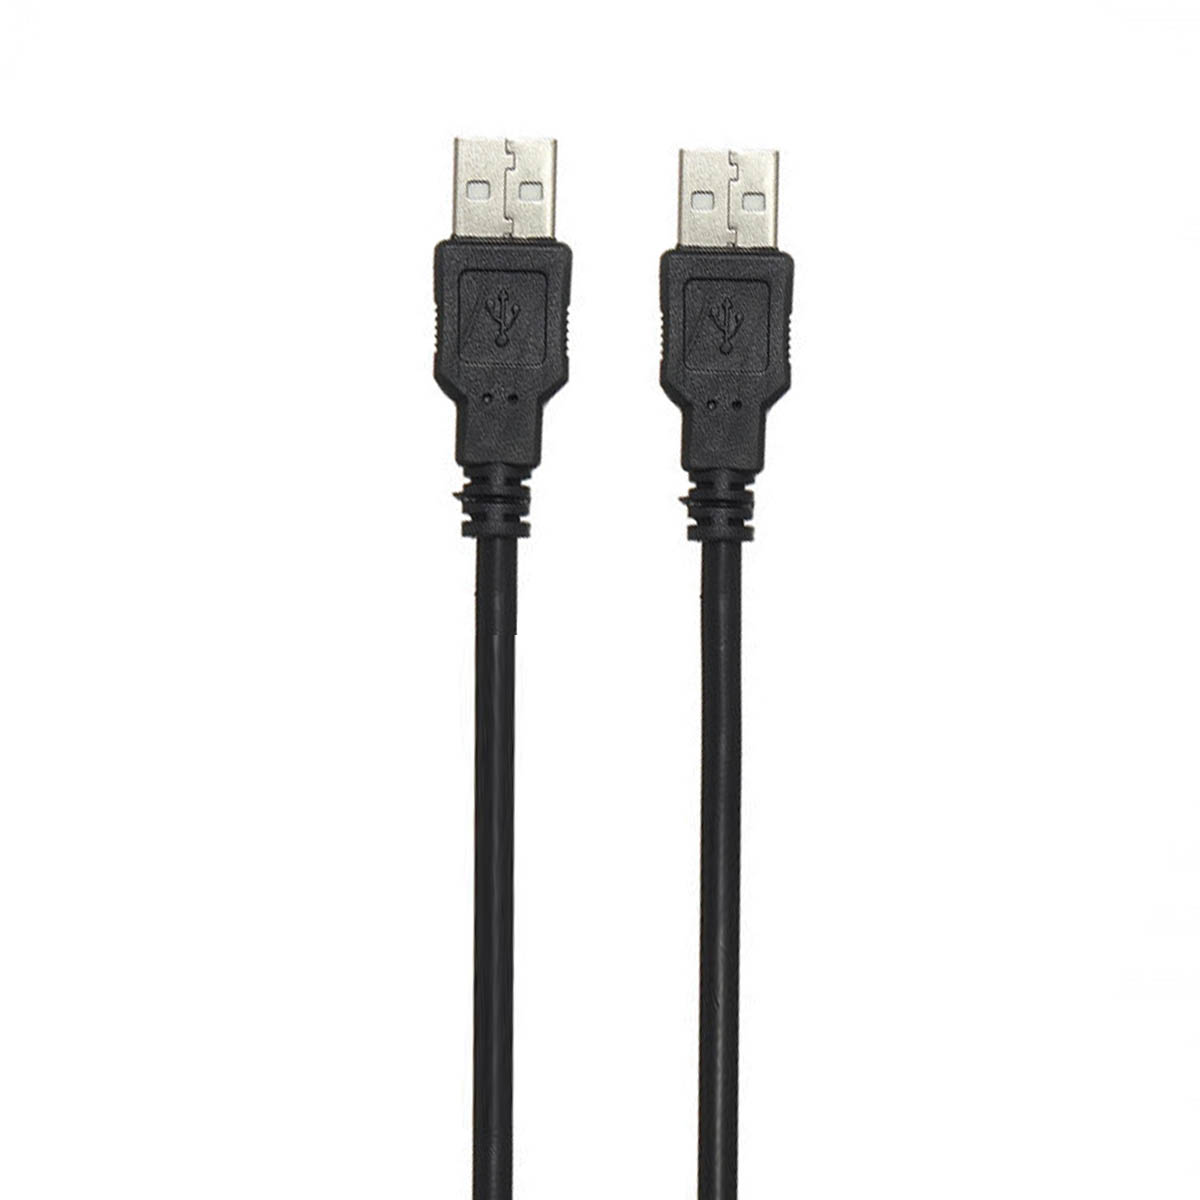 Кабель USB A 2.0 - USB A 2.0, 1.5 метра, тип папа-папа, ферритовый фильтр, цвет черный